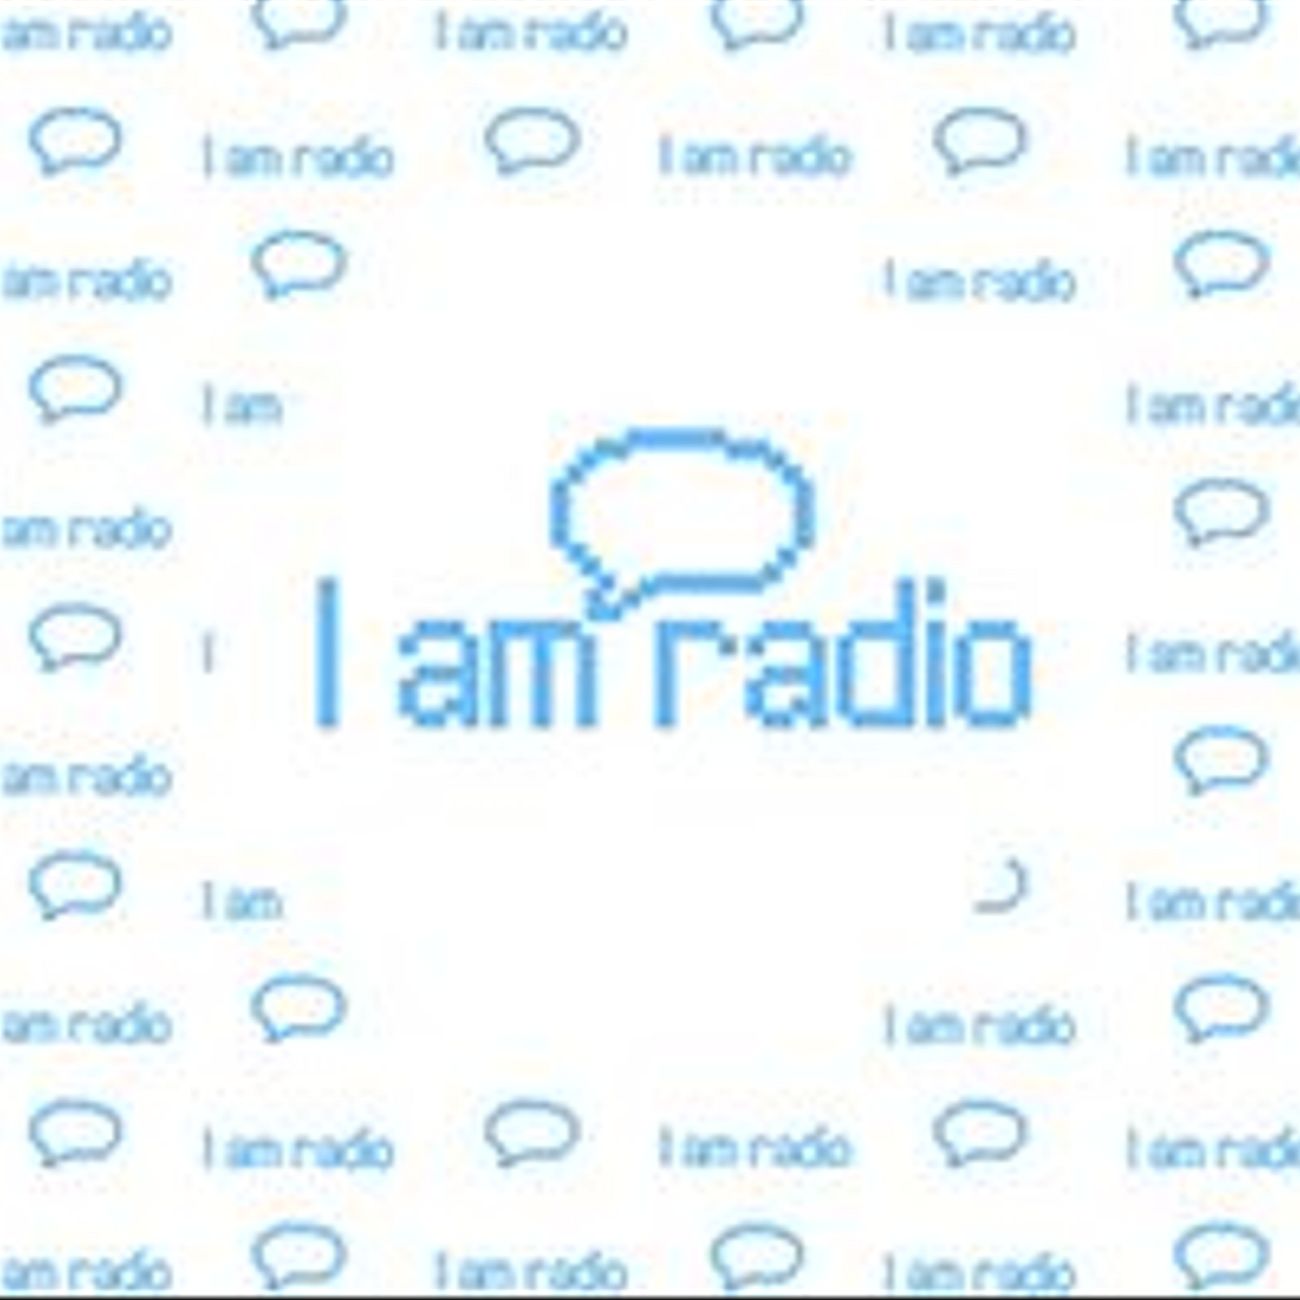 Iamradio